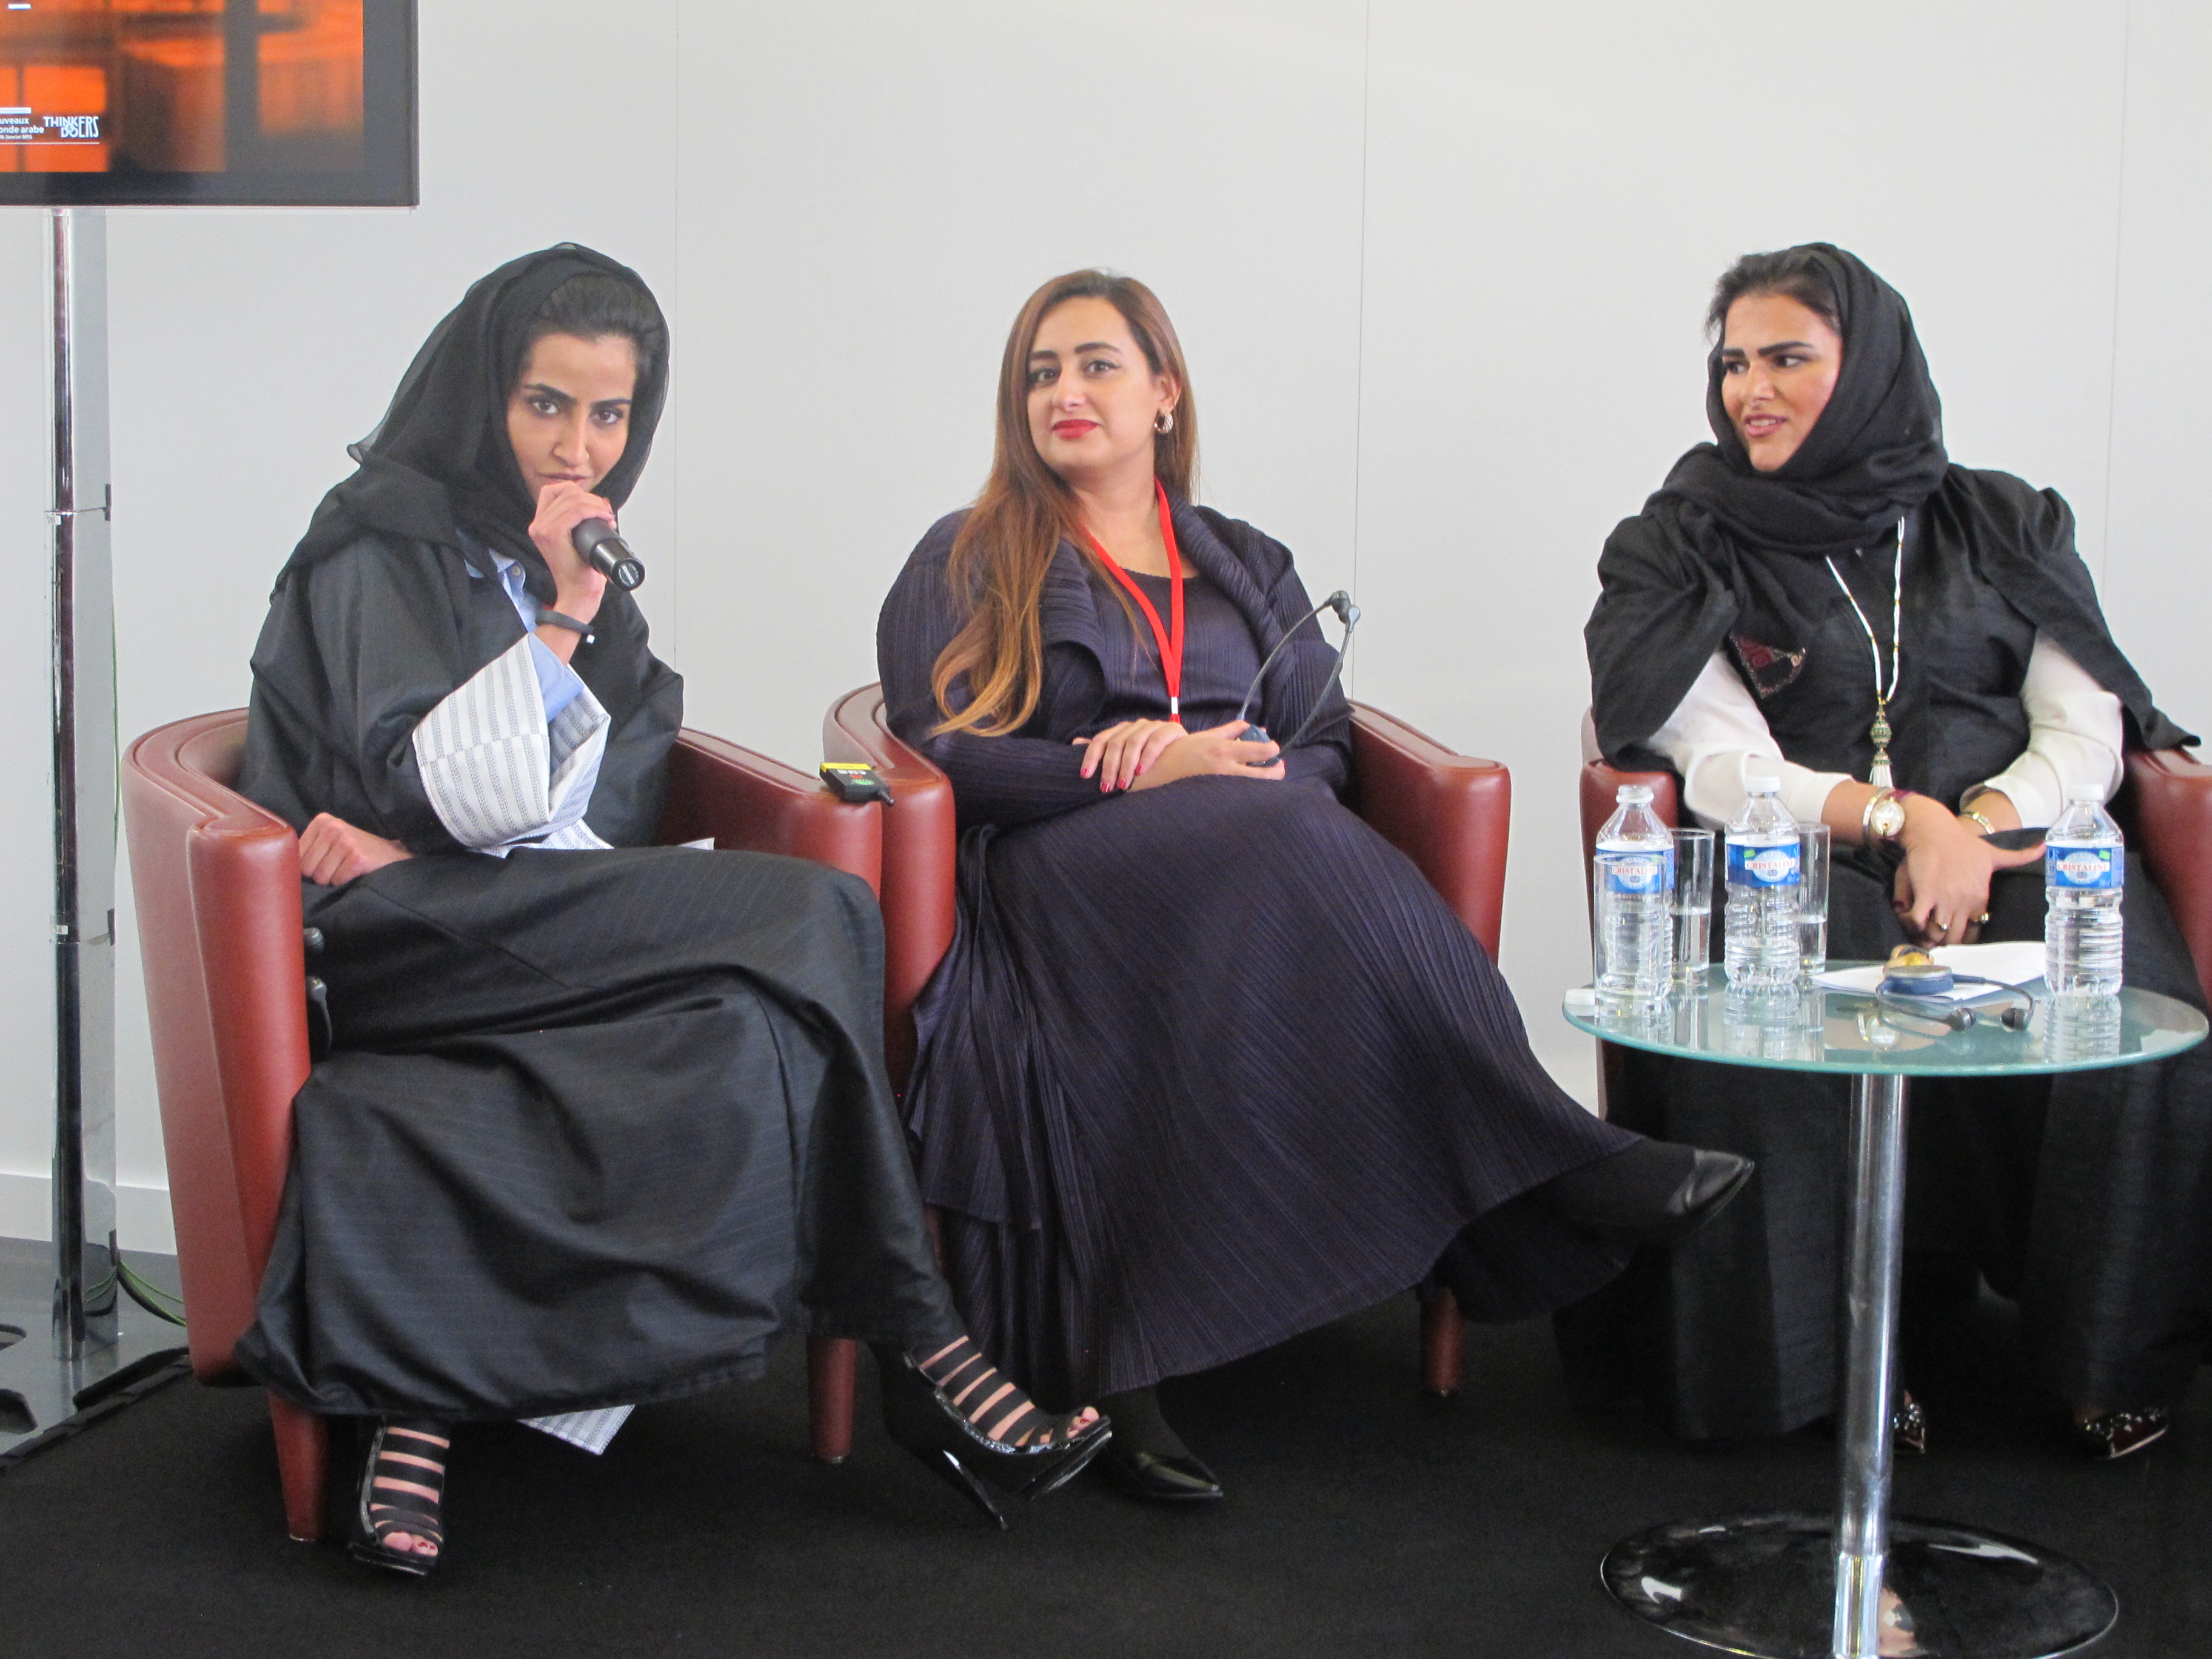 Arab Forum at IMA in Paris | Articles from Paris